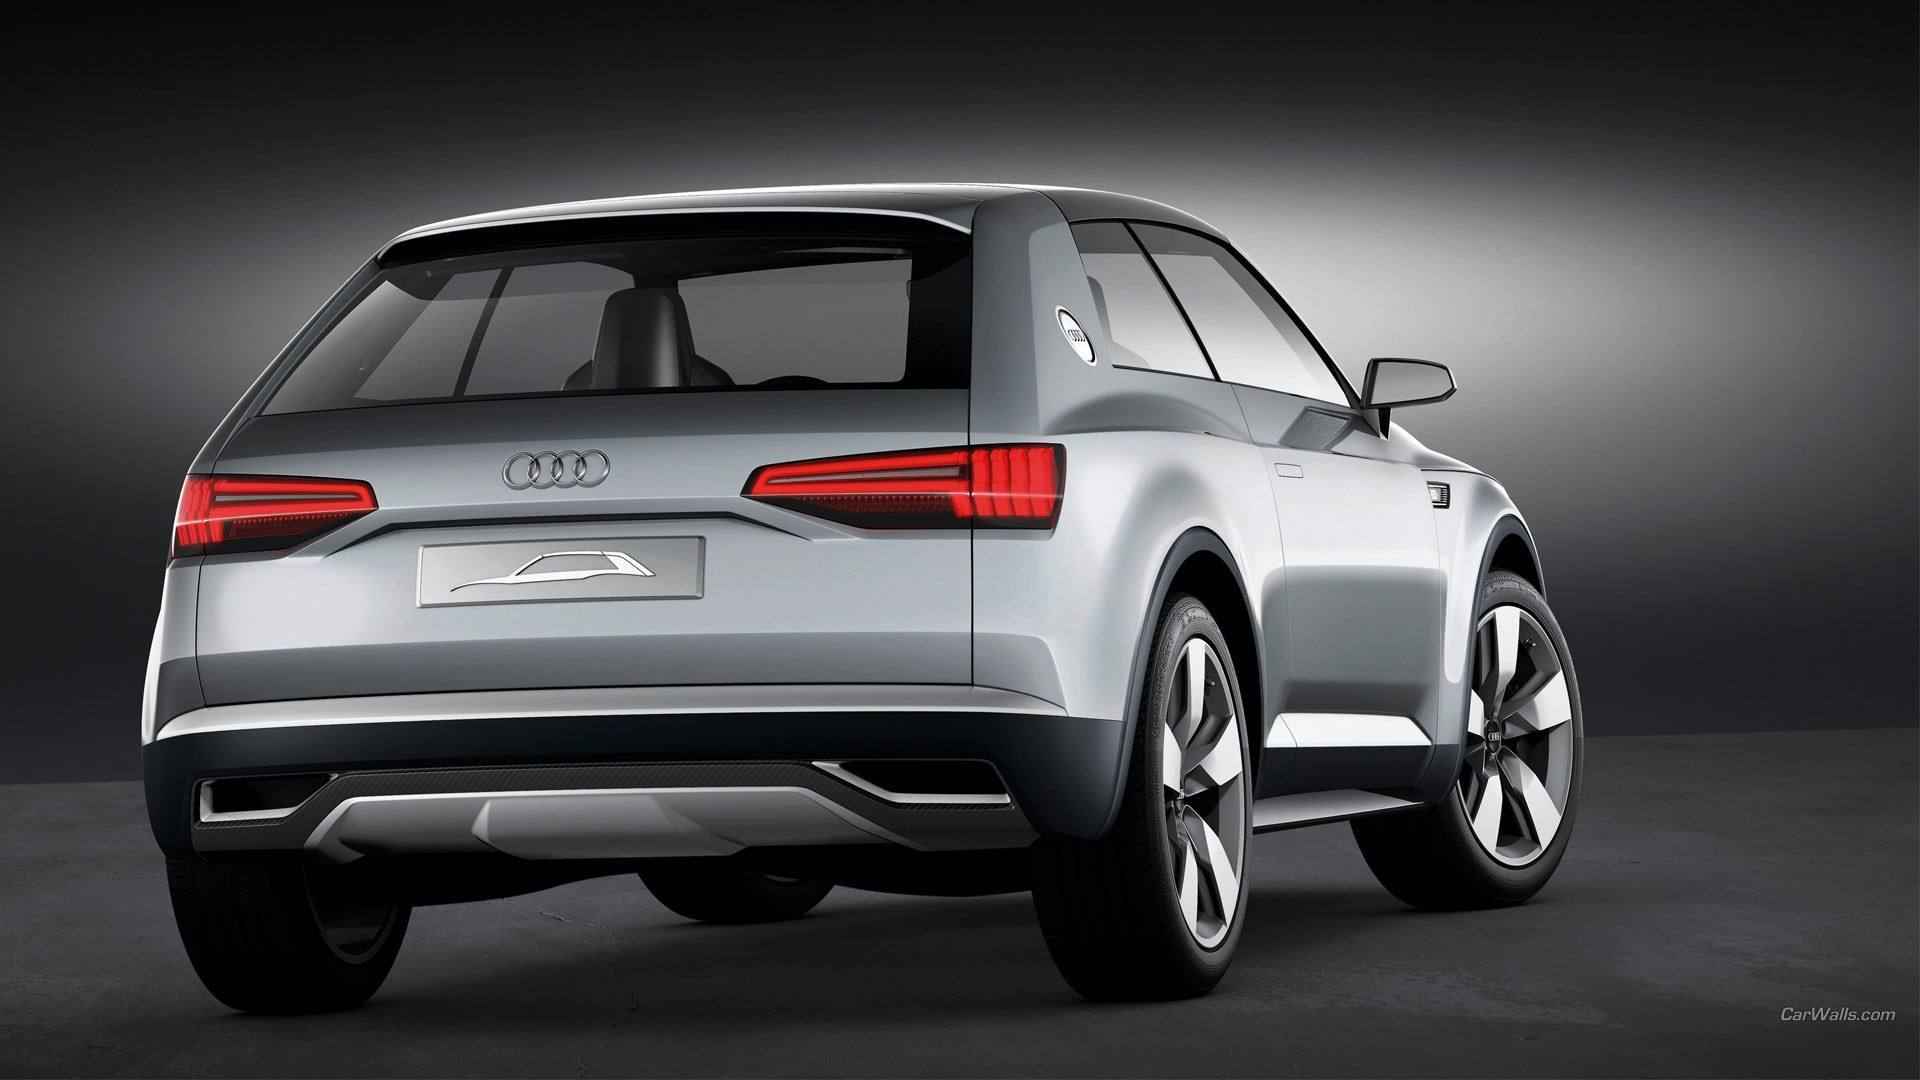 Audi_Crossline概率SUV休旅车宣传海报壁纸图片套图1